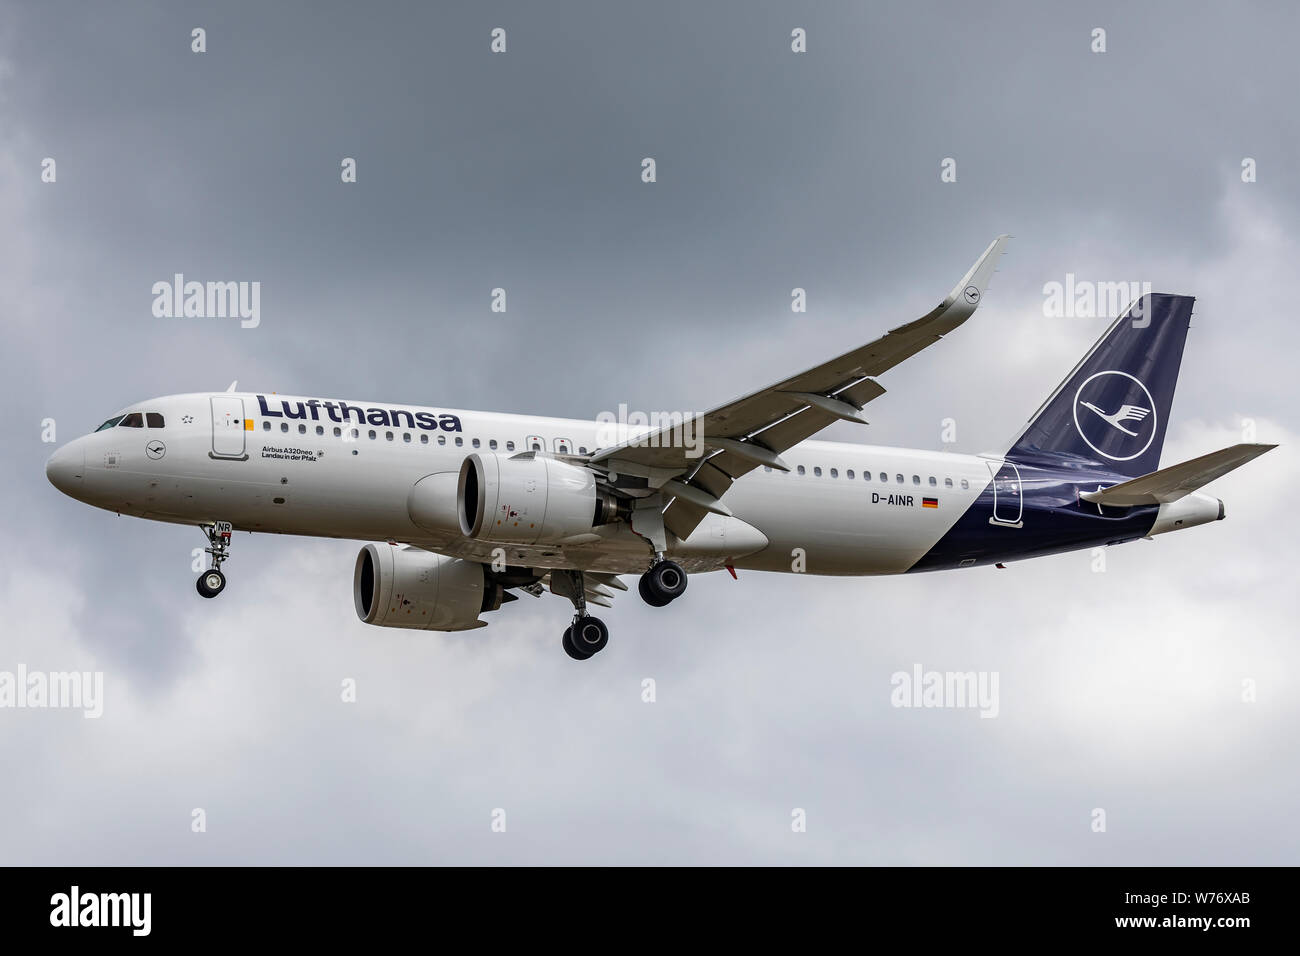 Lufthansa Airbus A320 NEO Registrierung D-AINR, Landung auf August 2 2019 am Flughafen London Heathrow, Middlesex, Großbritannien Stockfoto